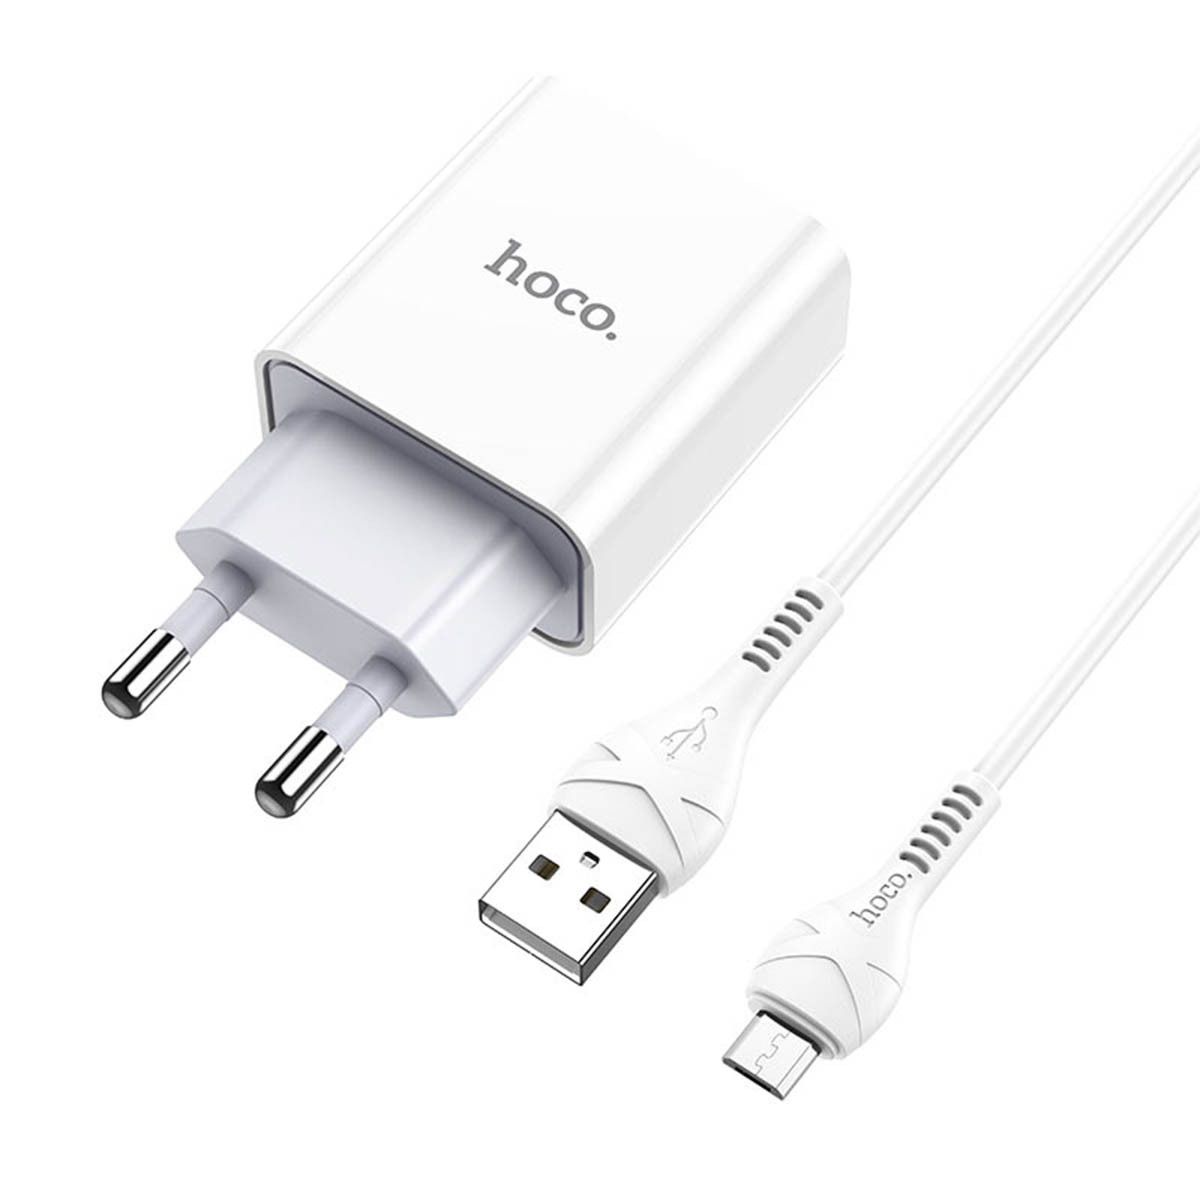 СЗУ (сетевое зарядное устройство) HOCO C81A Asombroso, адаптер 1 USB, 5V-2.1A, кабель micro USB, цвет белый